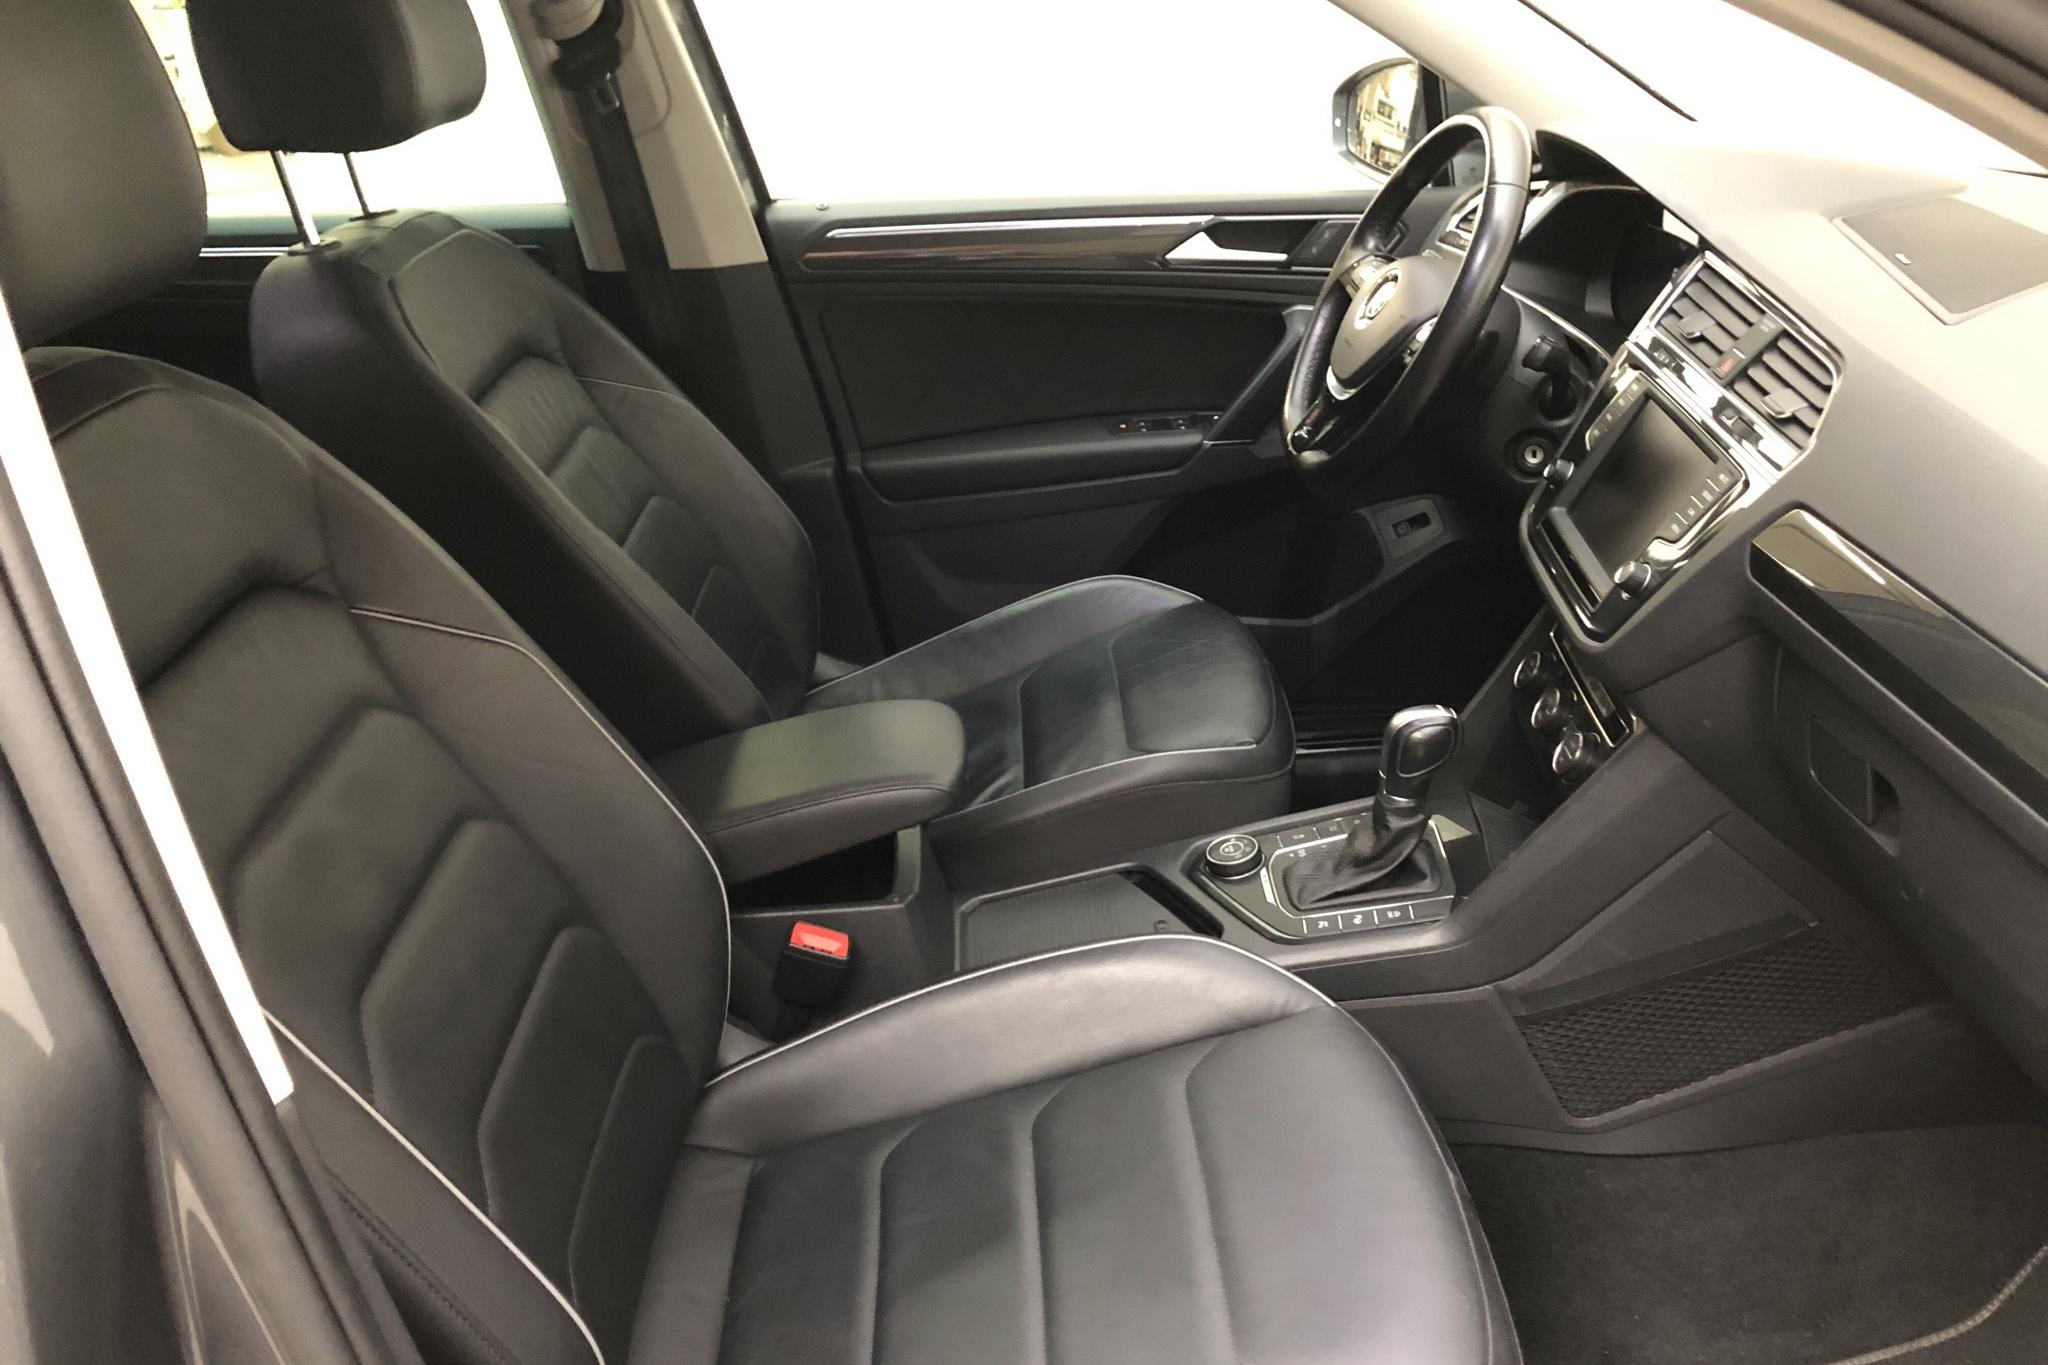 VW Tiguan 2.0 TDI 4MOTION (190hk) - 103 490 km - Automatic - silver - 2017